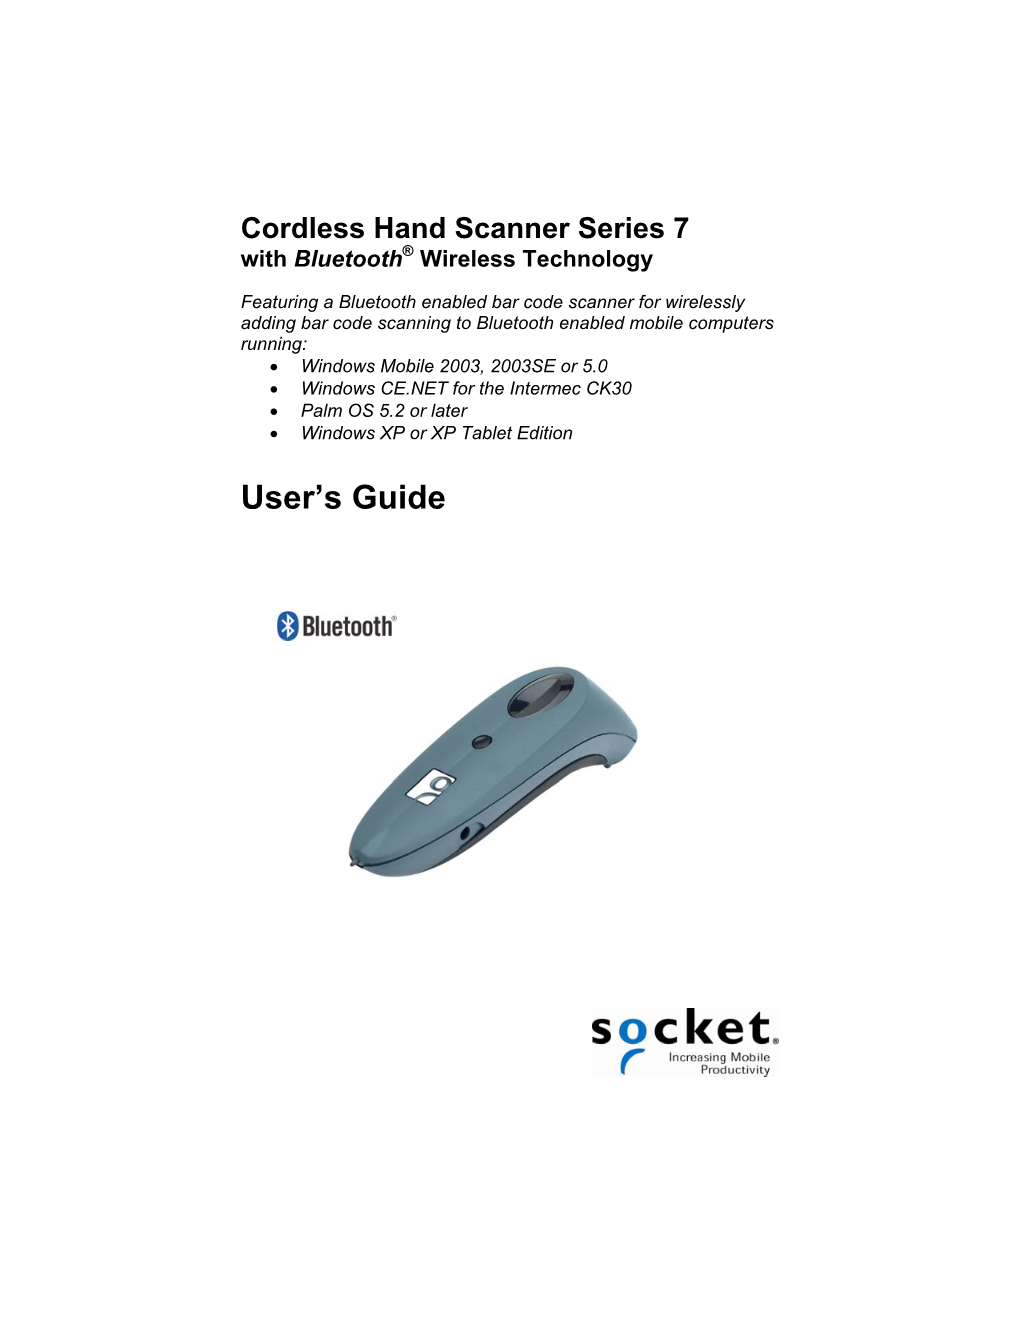 Socket Cordless Hand Scanner User's Guide